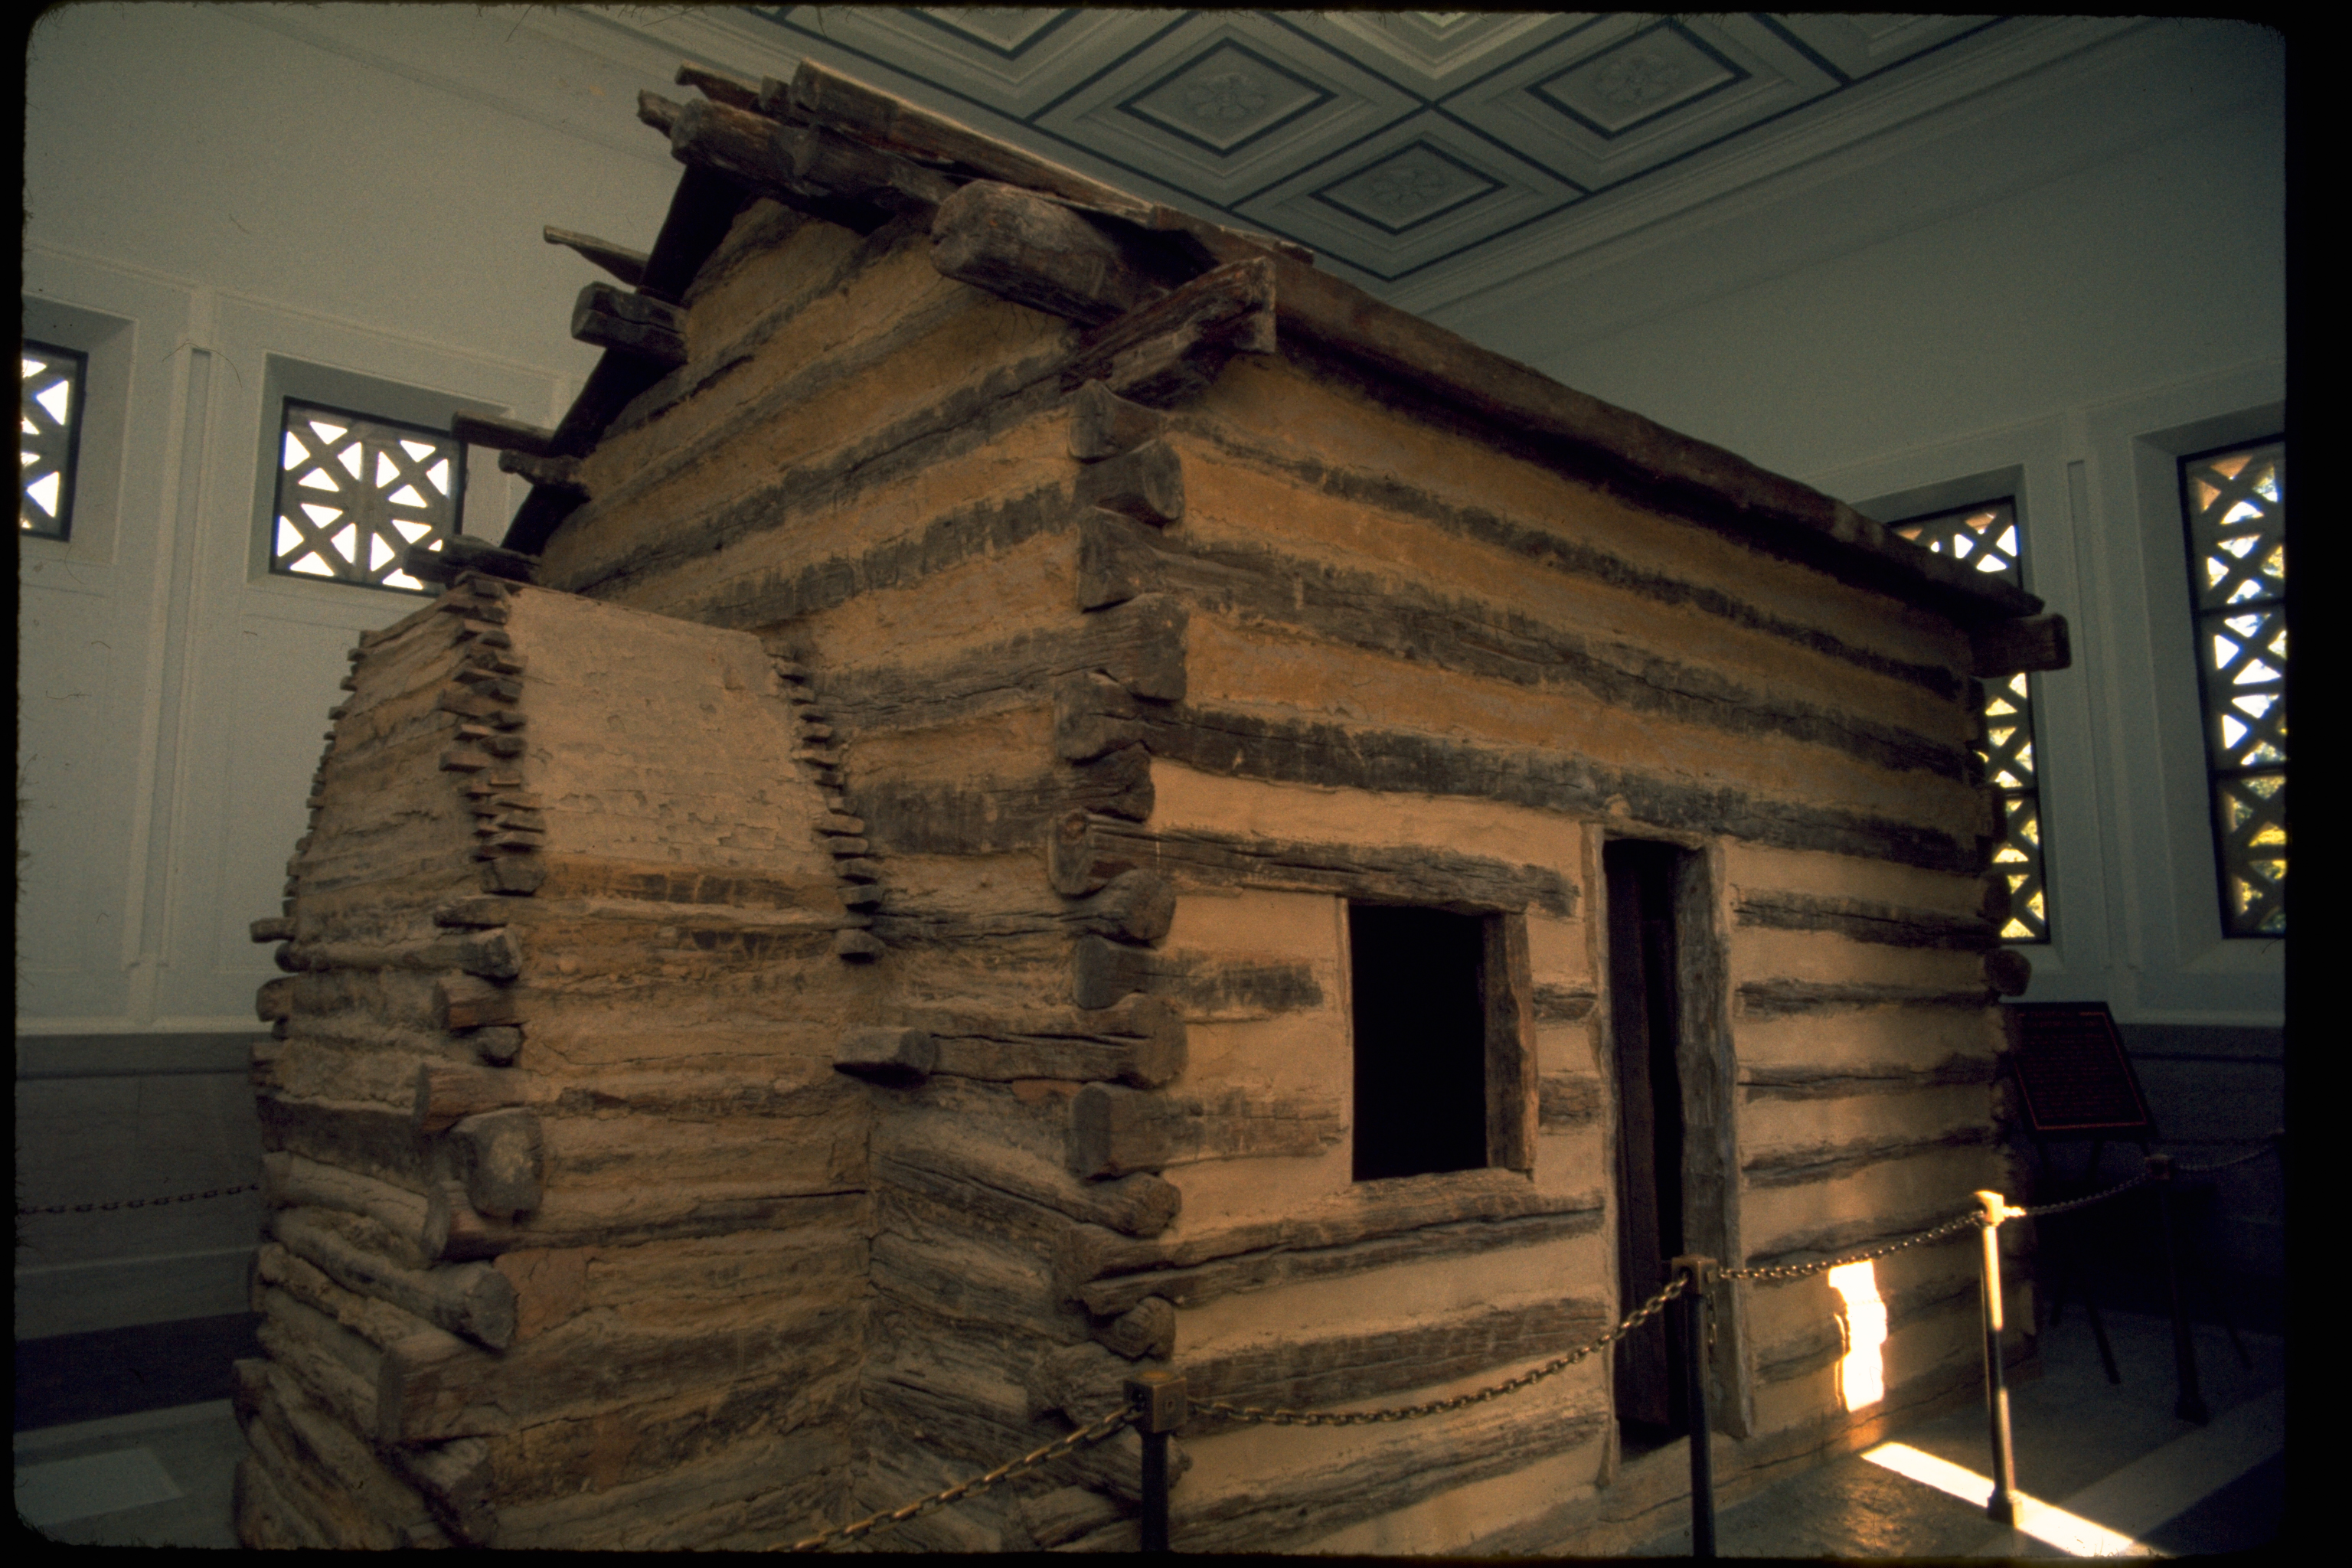 Lincoln's cabin